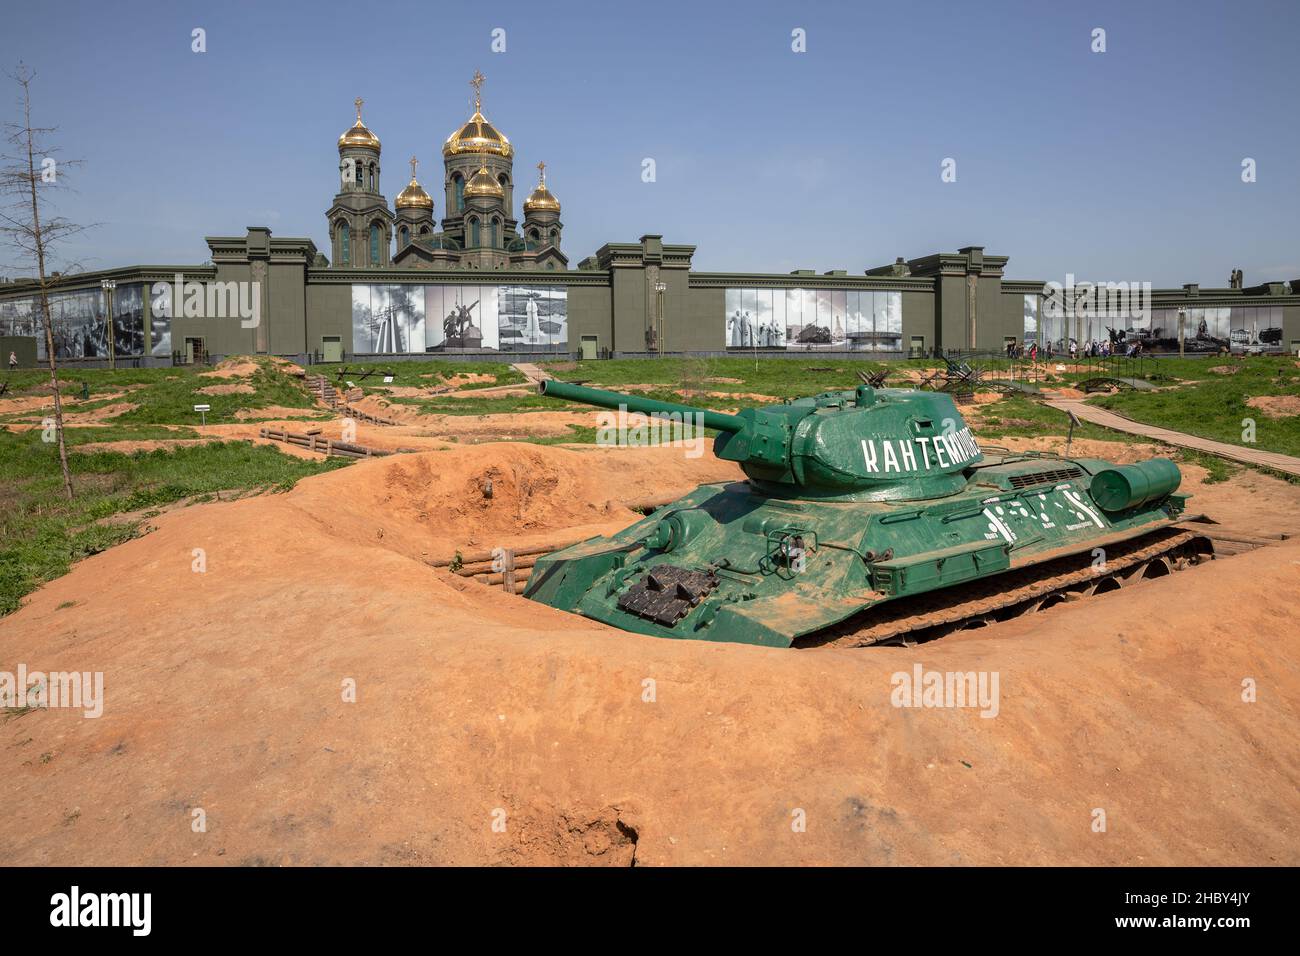 Parco Patriot, Mosca regione, Russia - 17 maggio 2021: Zona di ricostruzioni militari-storiche degli eventi della seconda guerra mondiale nel Parco Patriot. Foto Stock